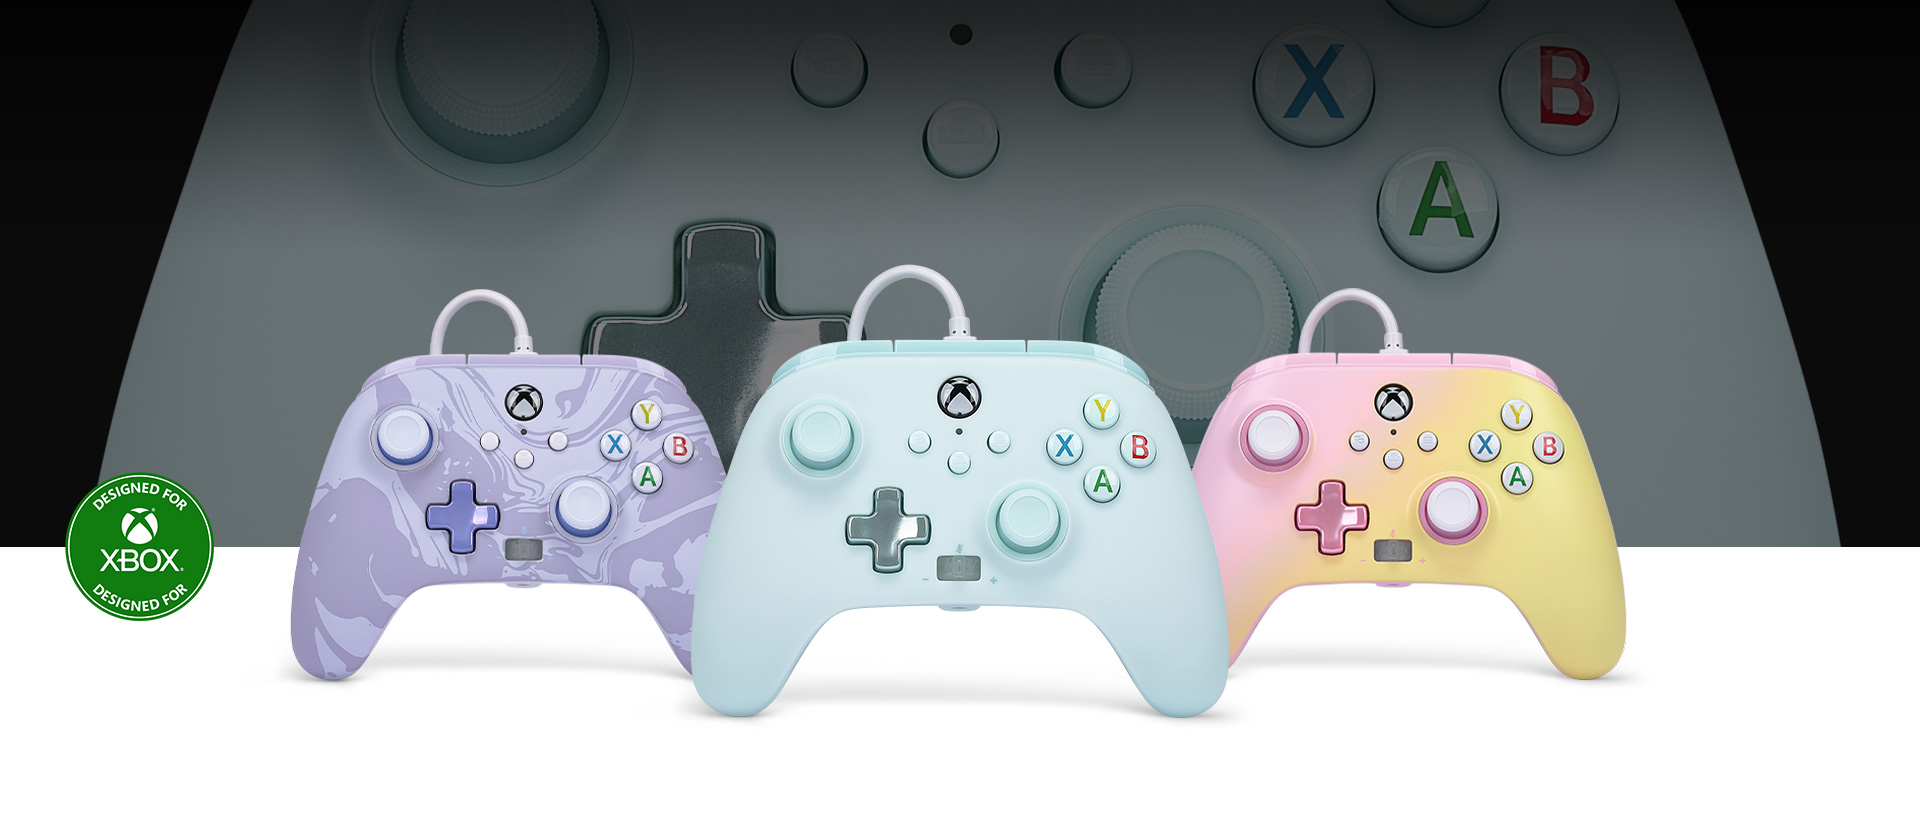 Logótipo Concebido para a Xbox, comando Cotton Candy Blue em frente rodeado por comandos Purple Camo e Pink Lemonade